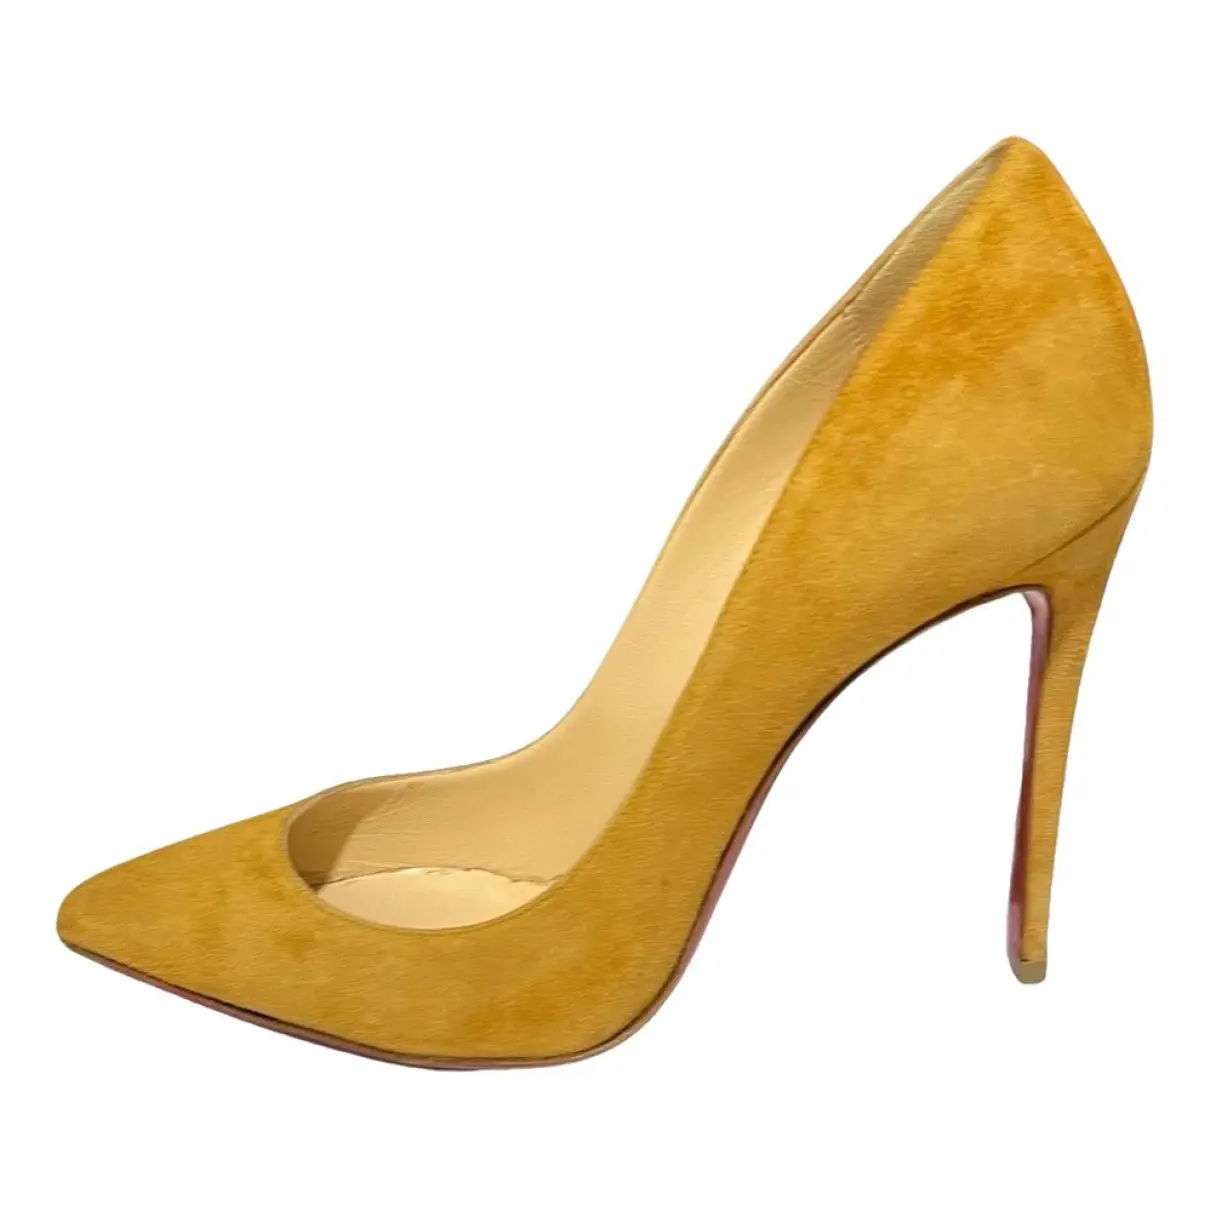 Pigalle heels